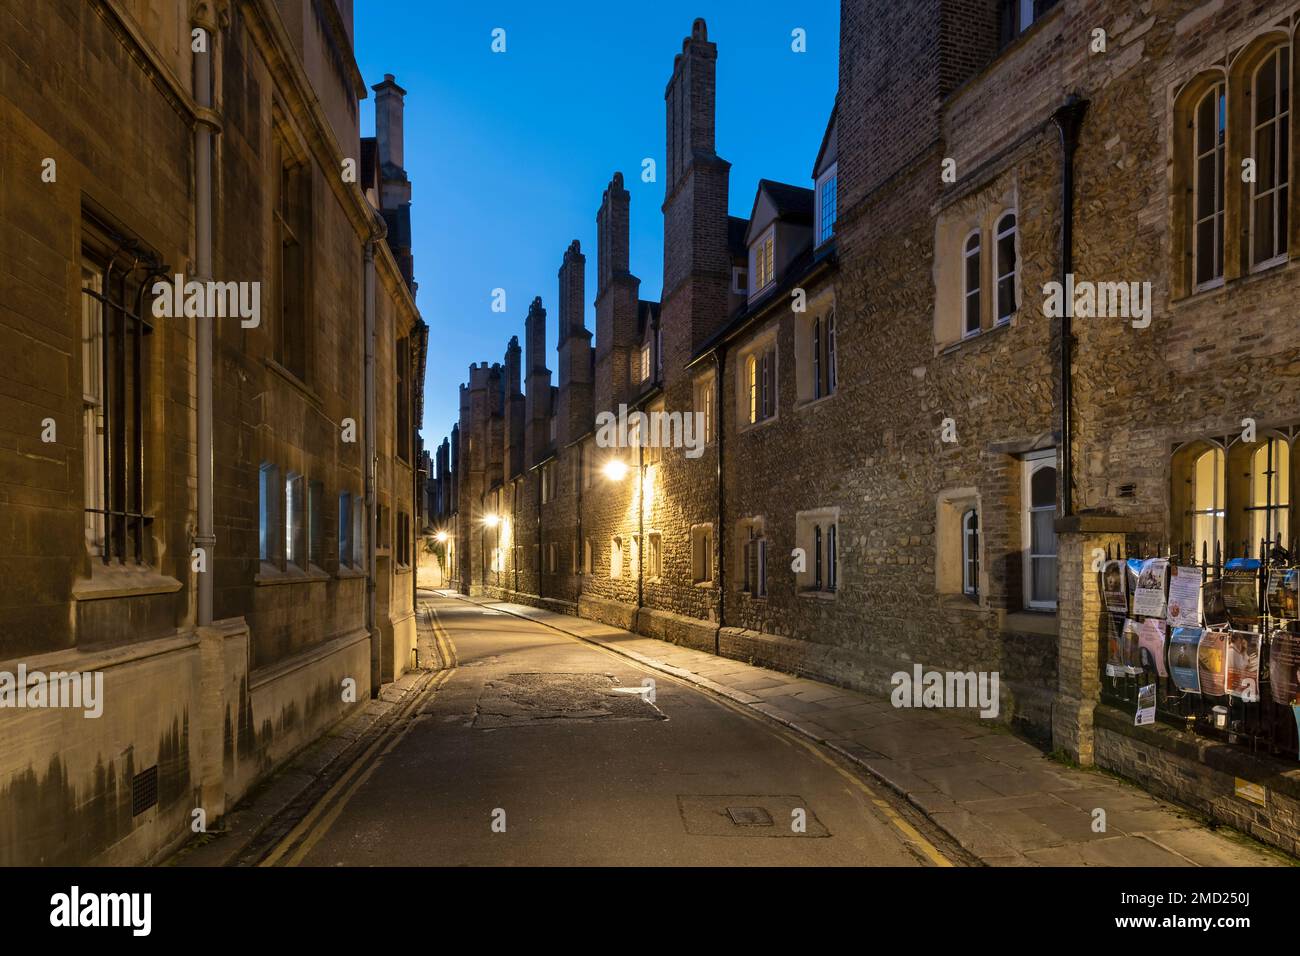 Bâtiments Tudor en brique rouge avec cheminées hautes sur Trinity Lane la nuit, Cambridge, Cambridgeshire, Angleterre, Royaume-Uni Banque D'Images